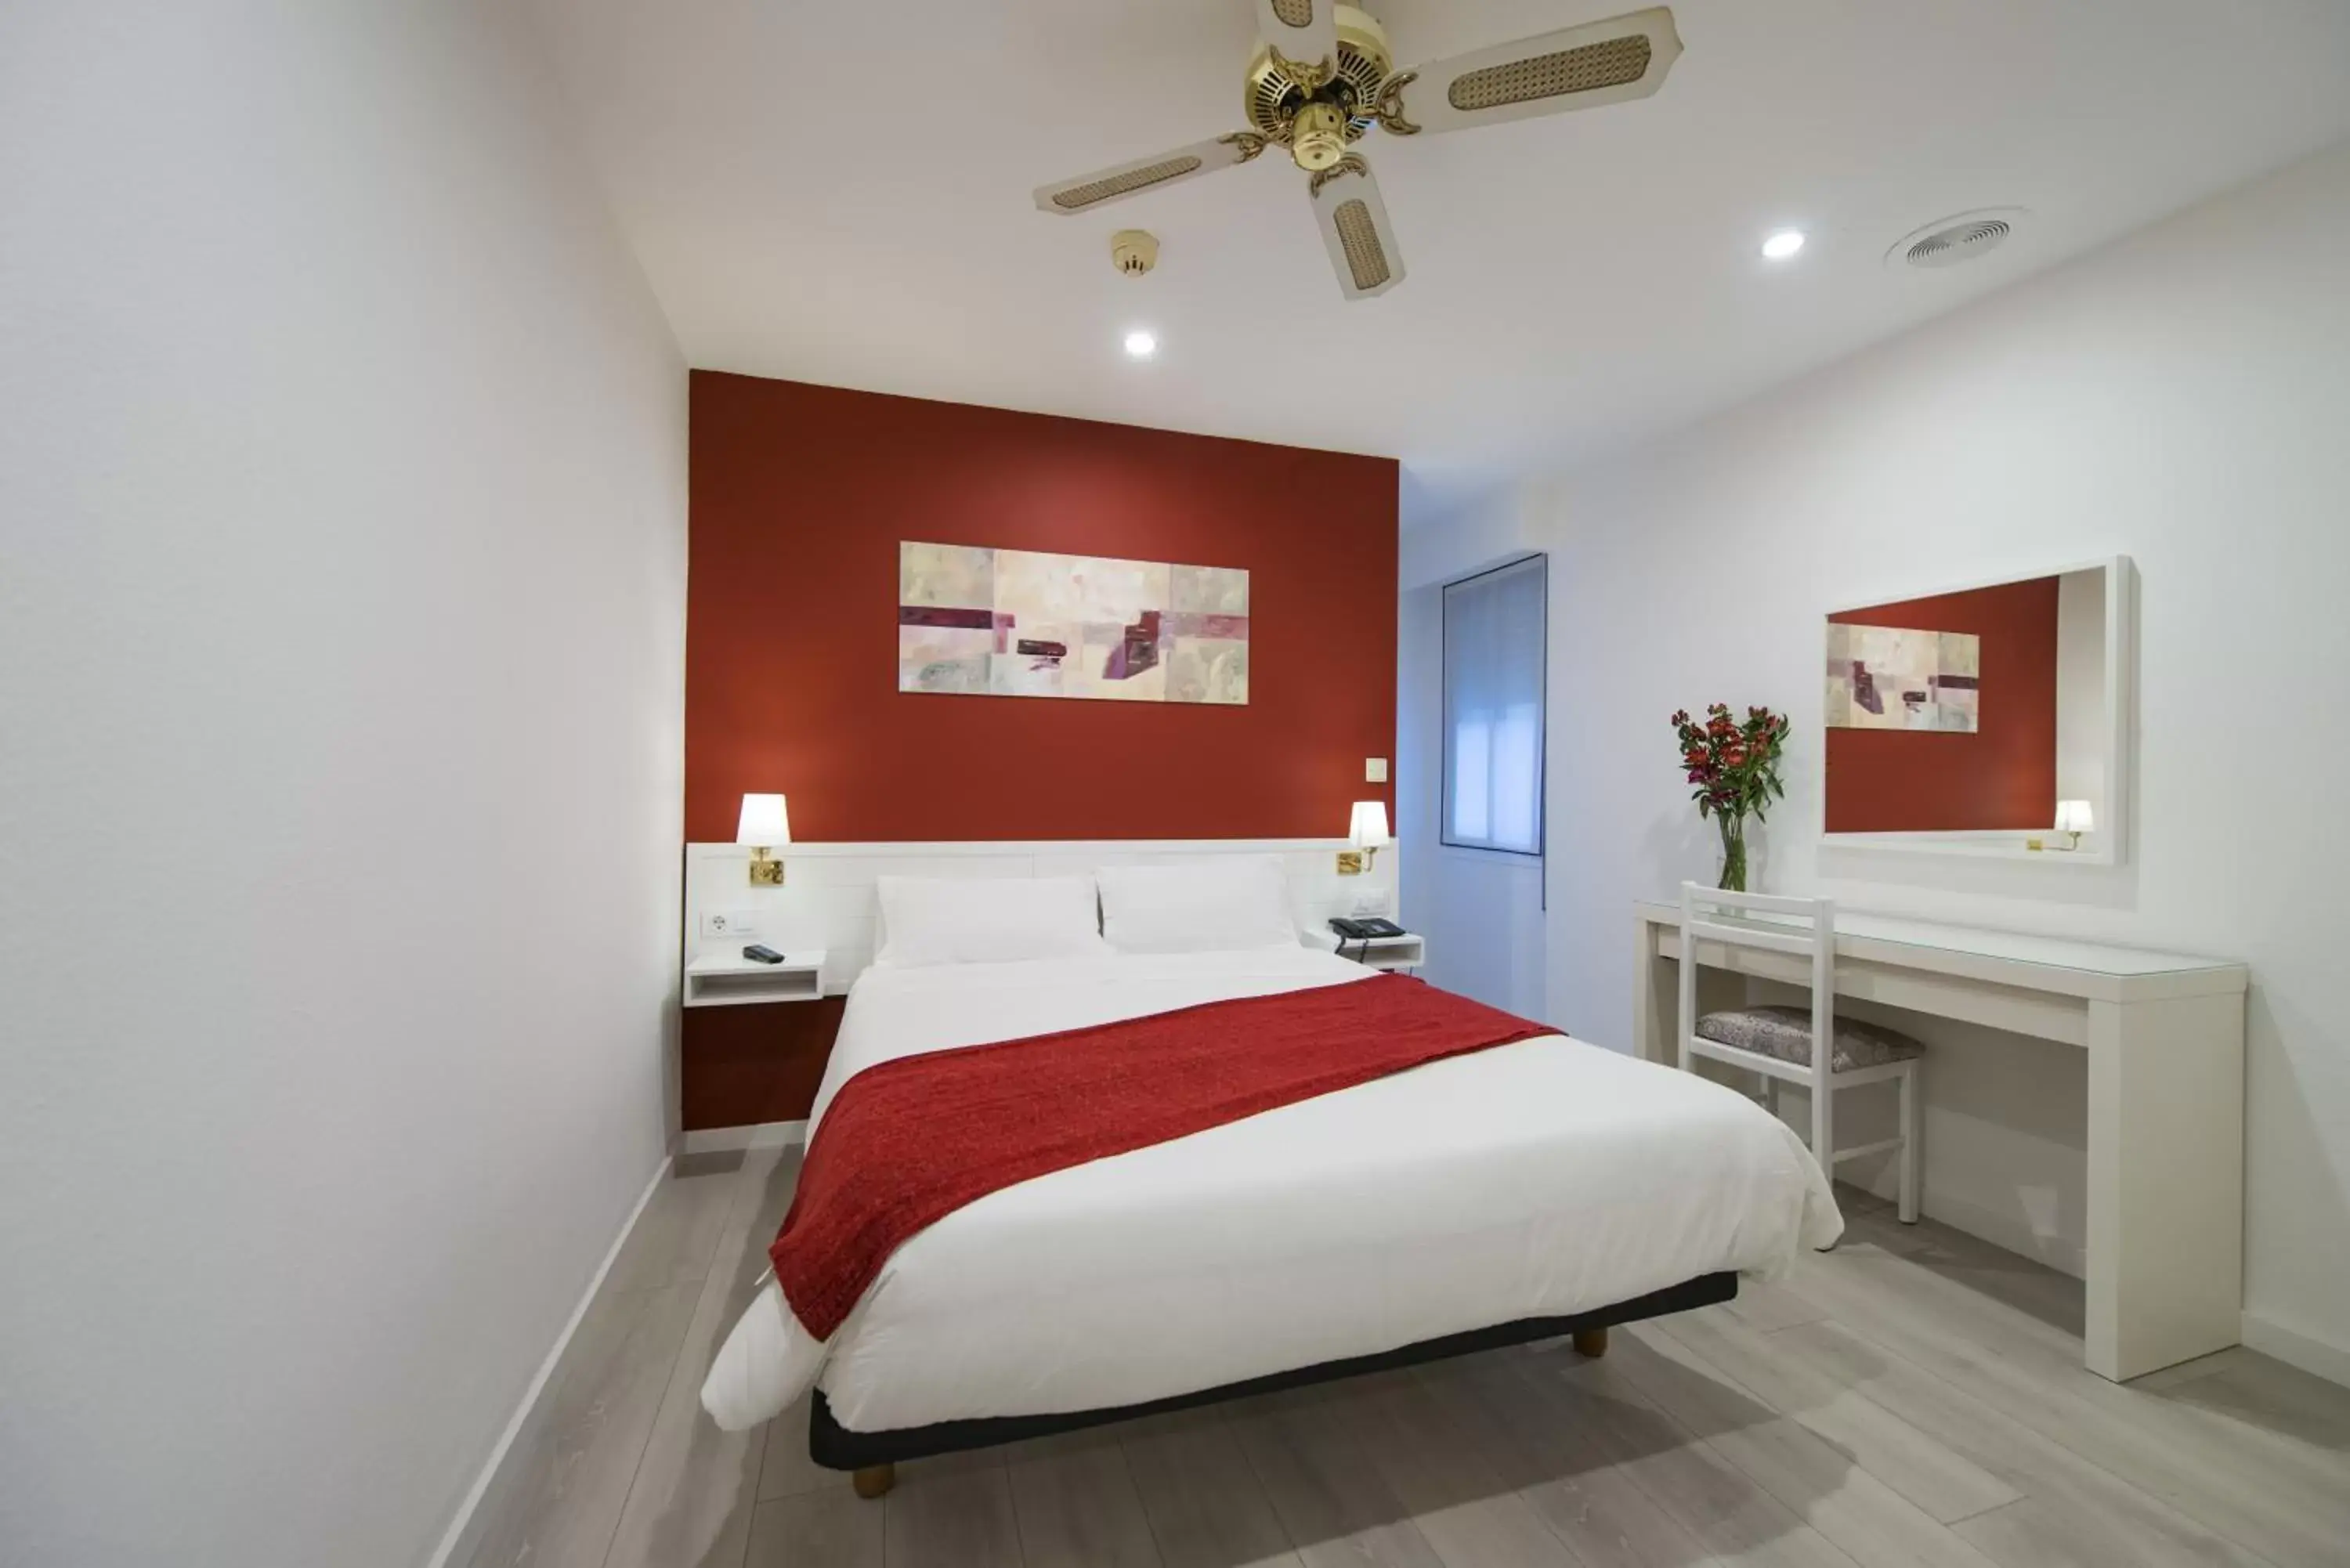 Bedroom, Room Photo in Hotel Miño